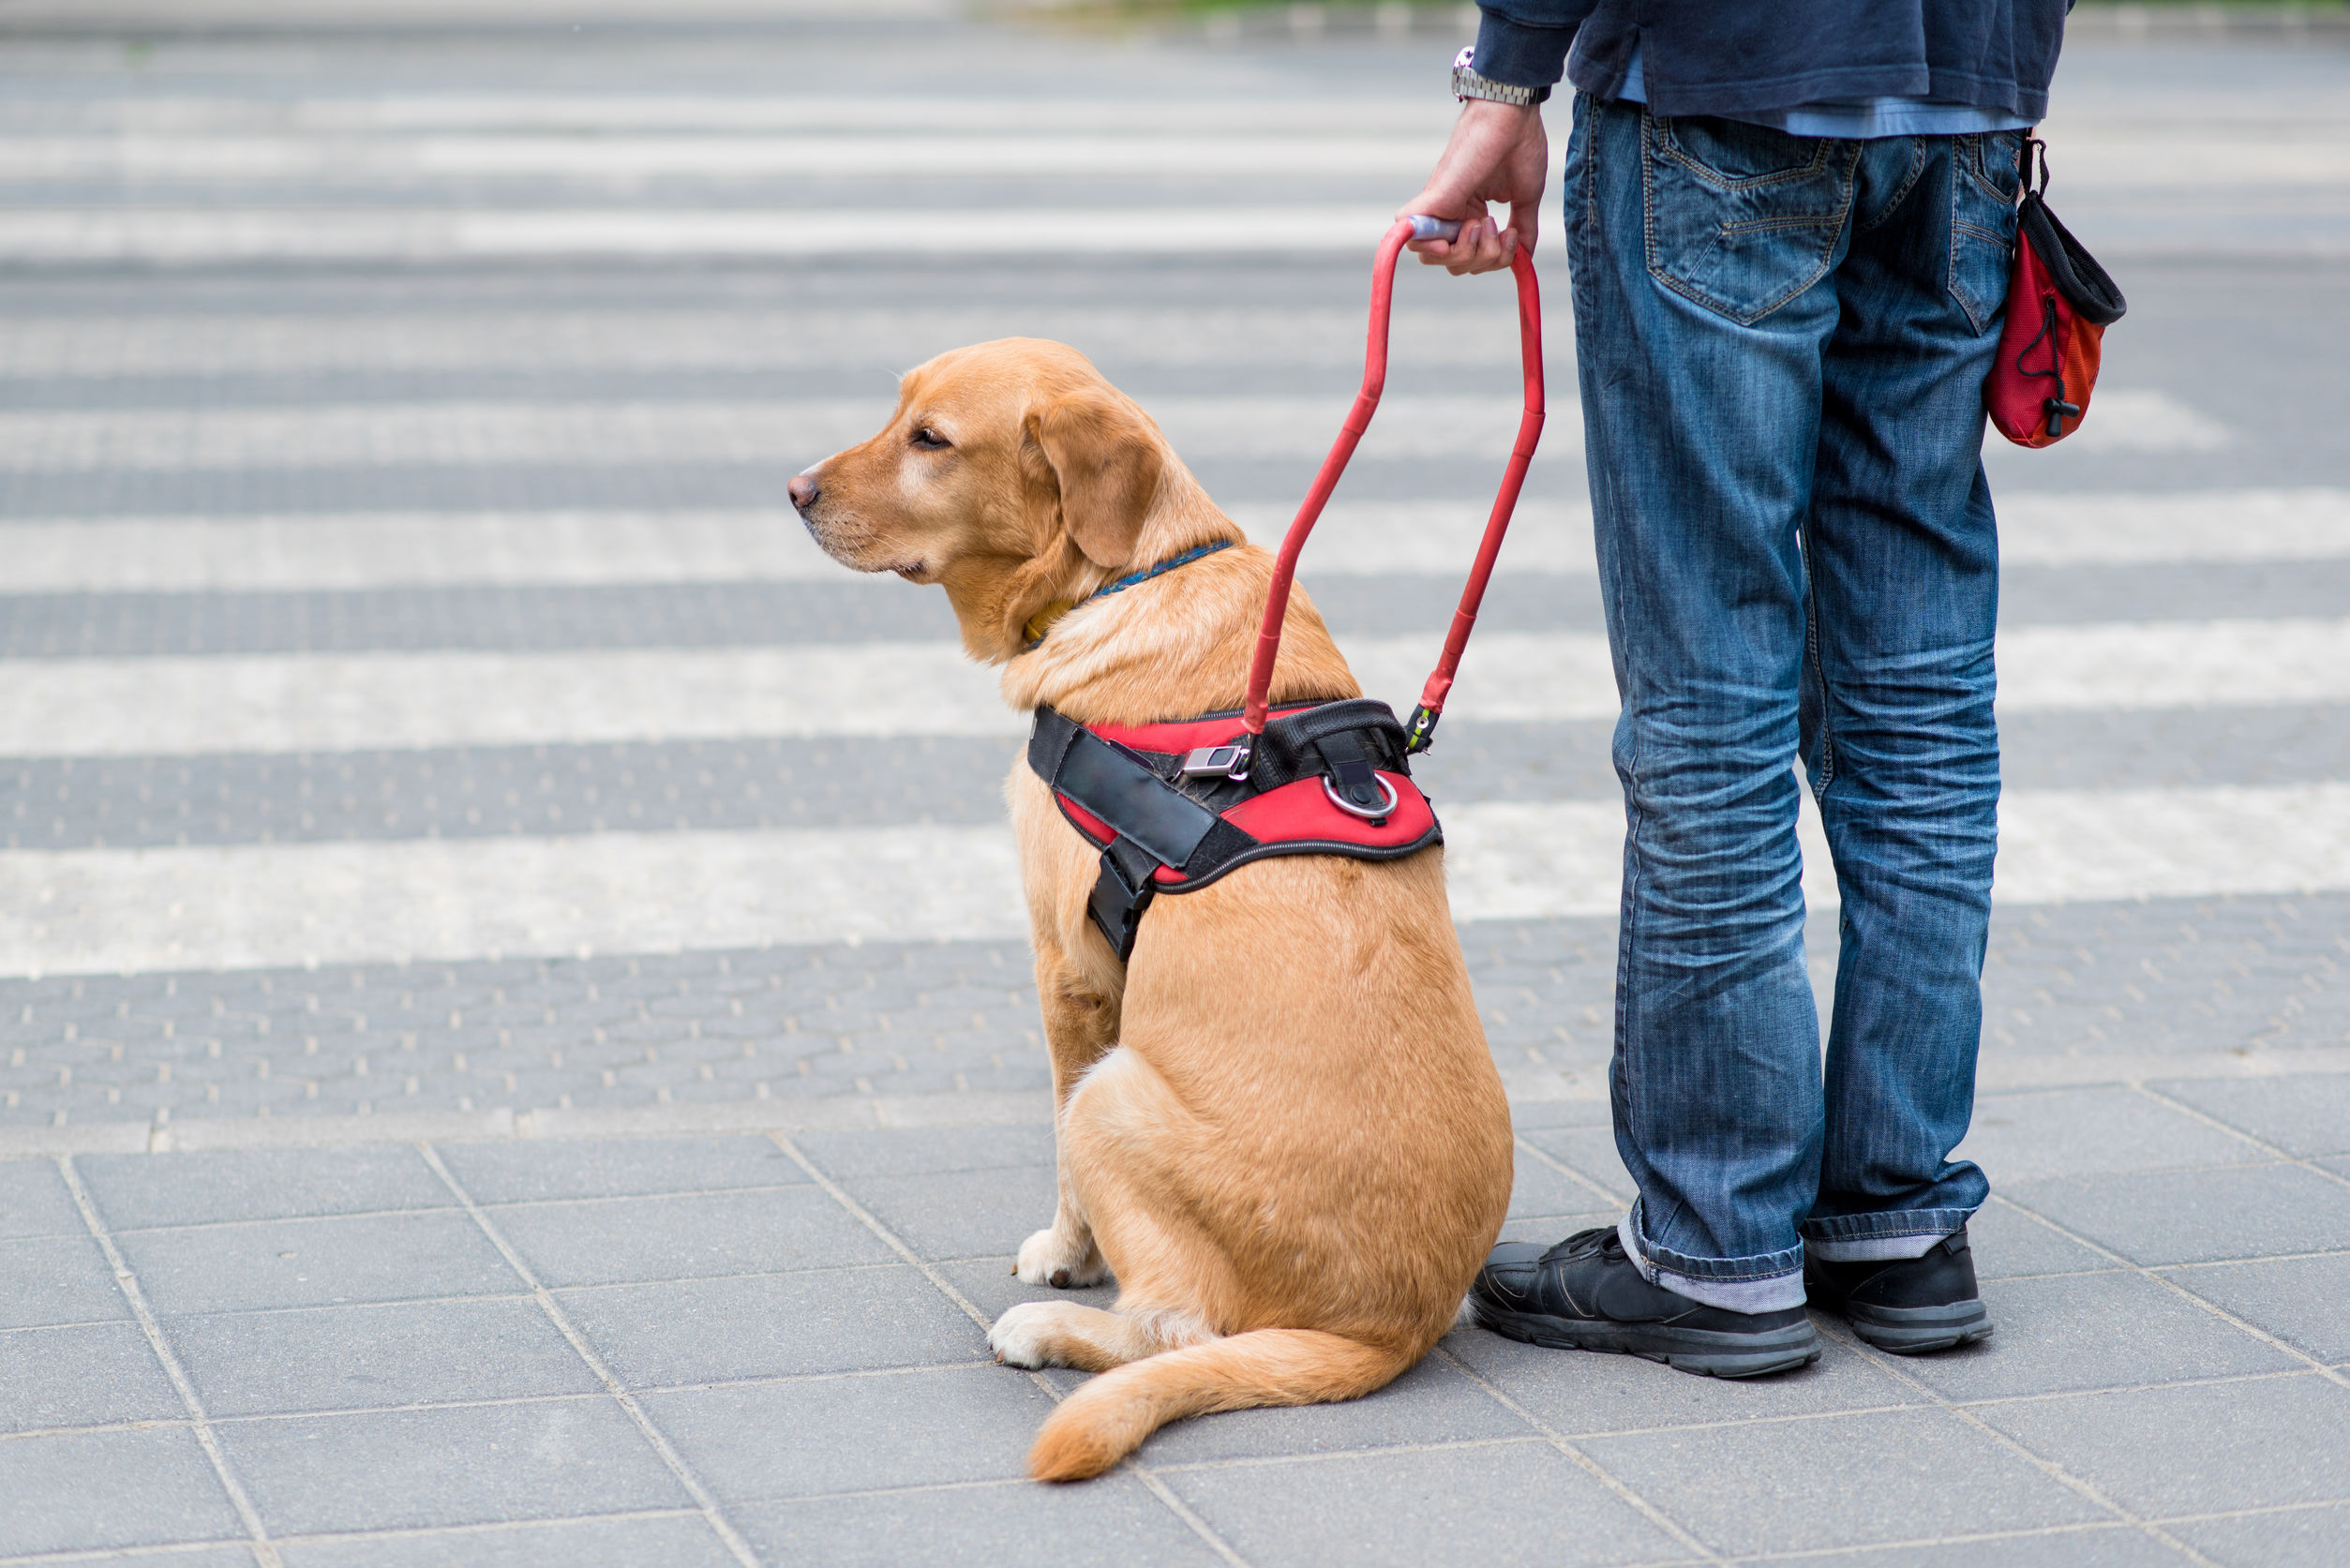 導盲犬是視障人士的緊密夥伴，牠們便利視障人士參與社會，加強他們獨立生活的能力，令視障人士的世界變得更廣濶，絕對值得大家的尊重。